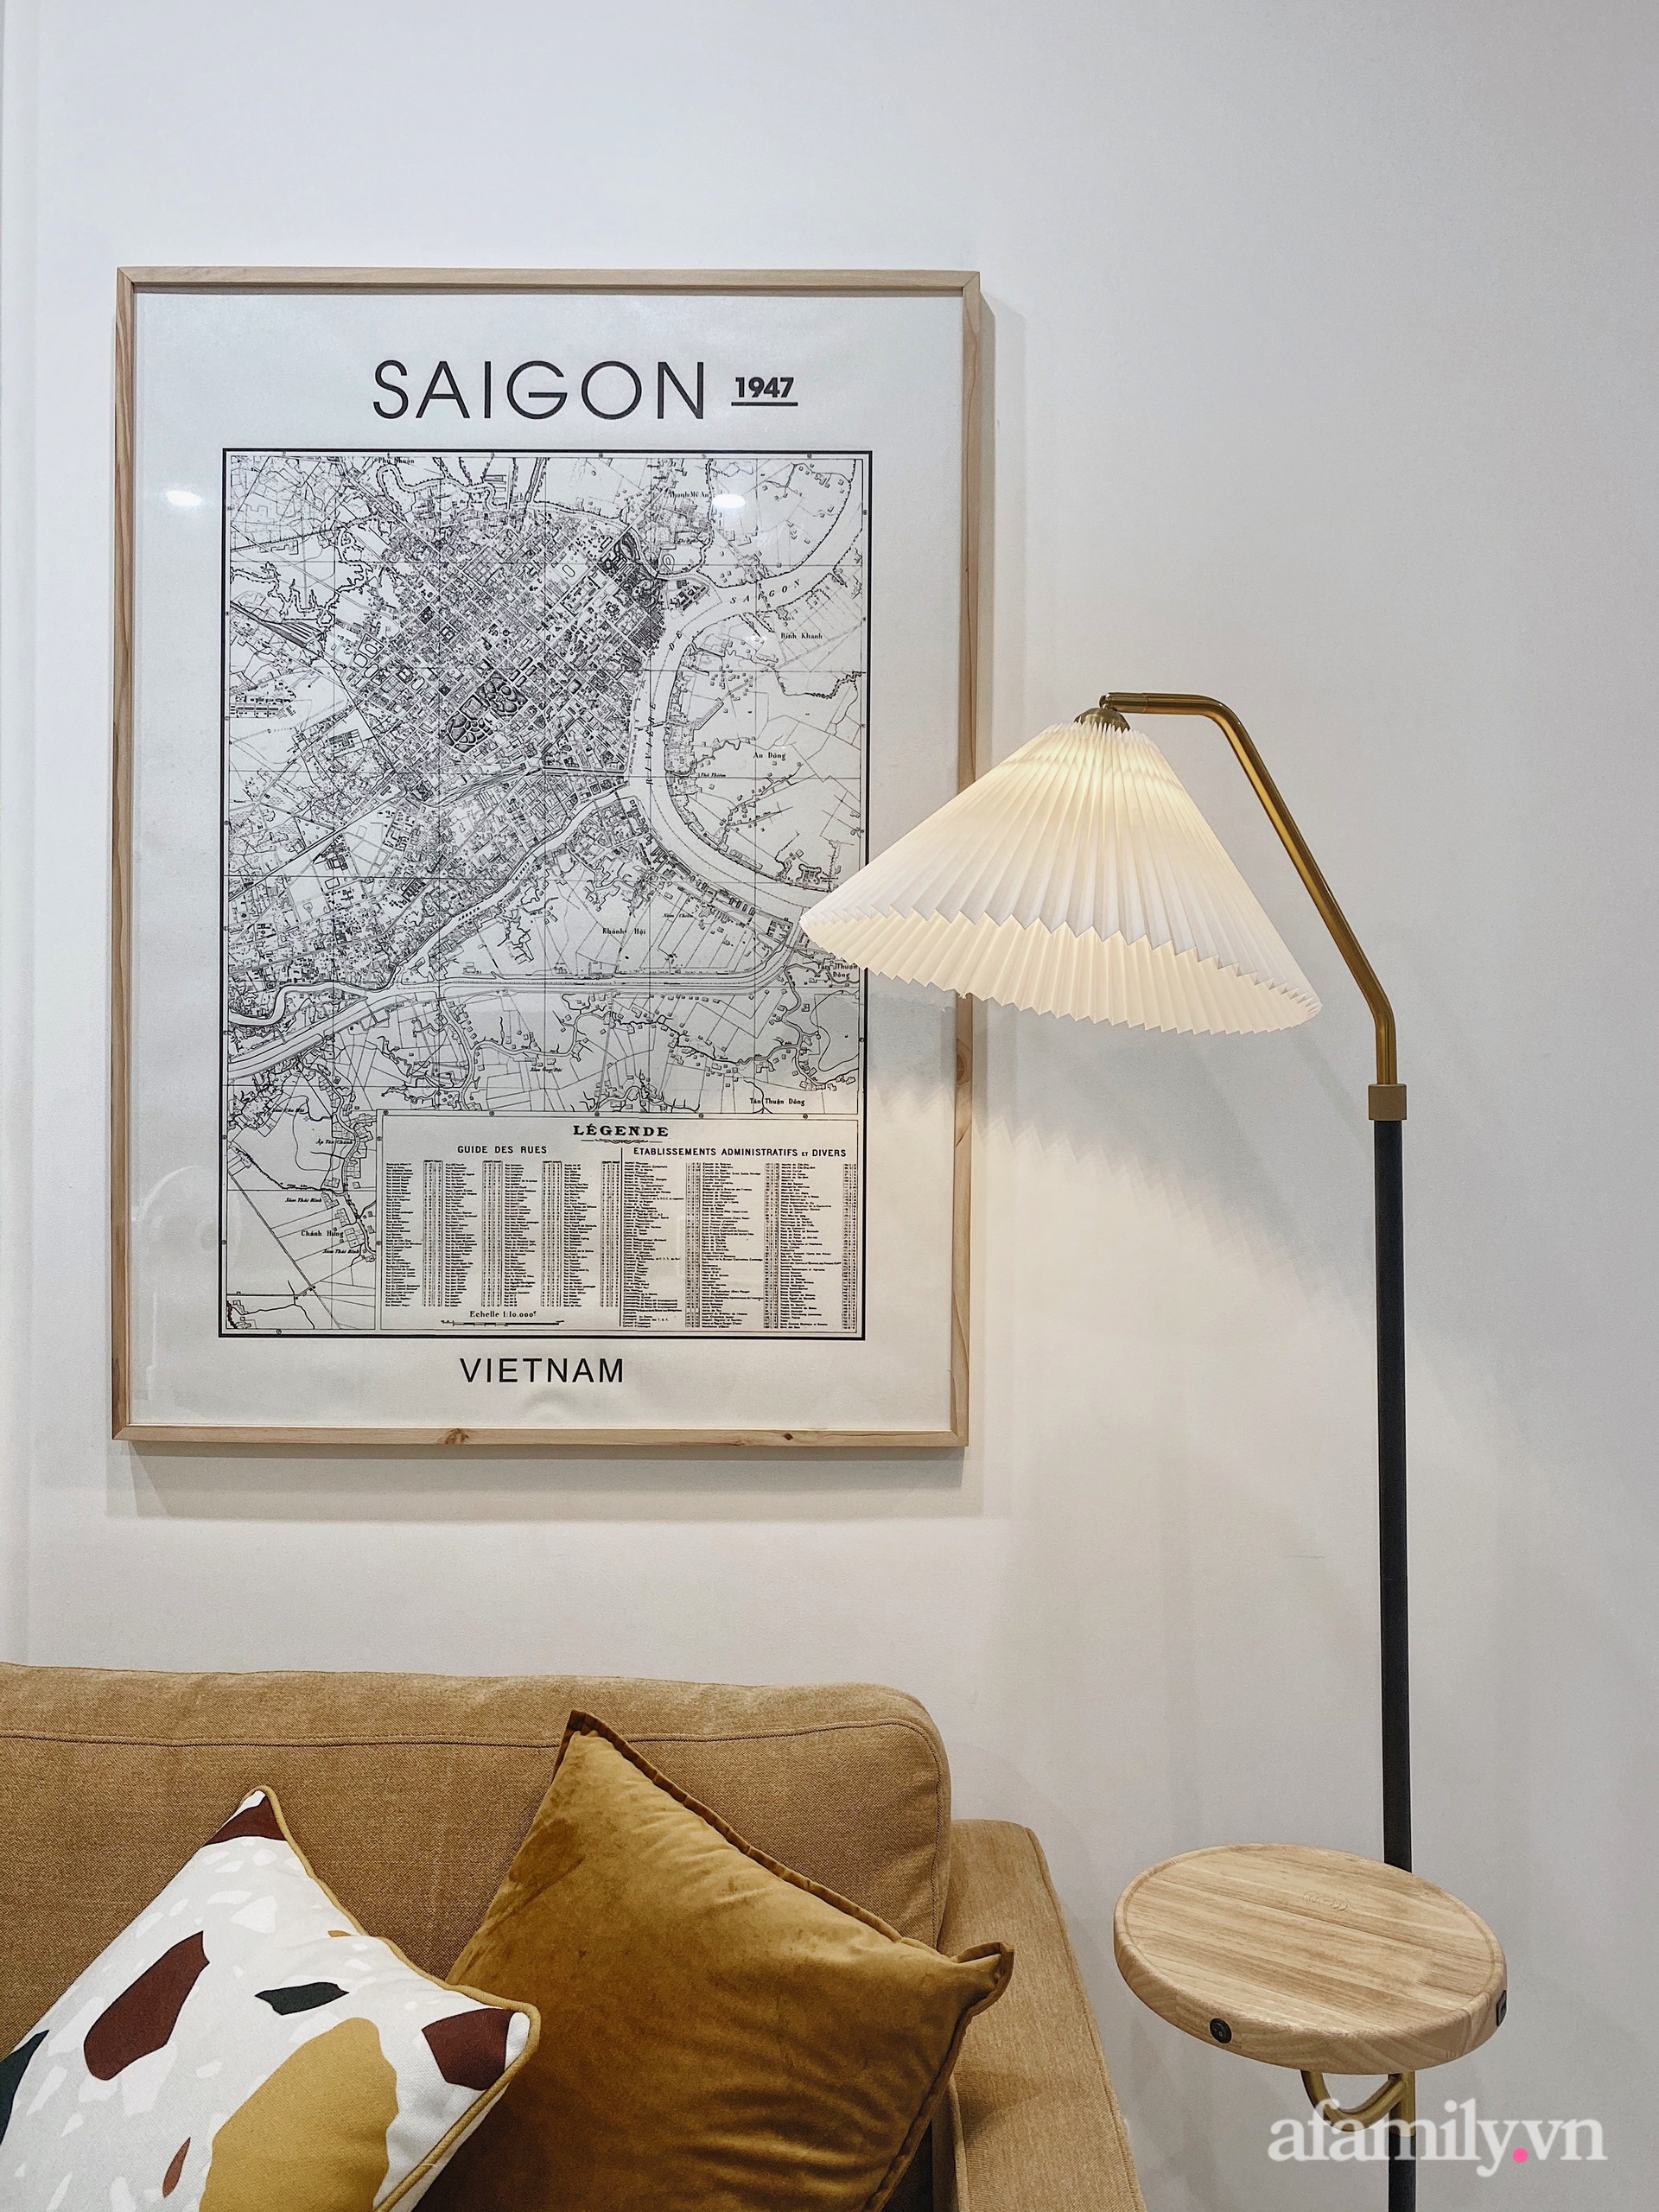 Căn hộ 106m² gói trọn bình yên với tông màu trung tính hiện đại của vợ chồng trẻ Sài Gòn - Ảnh 5.